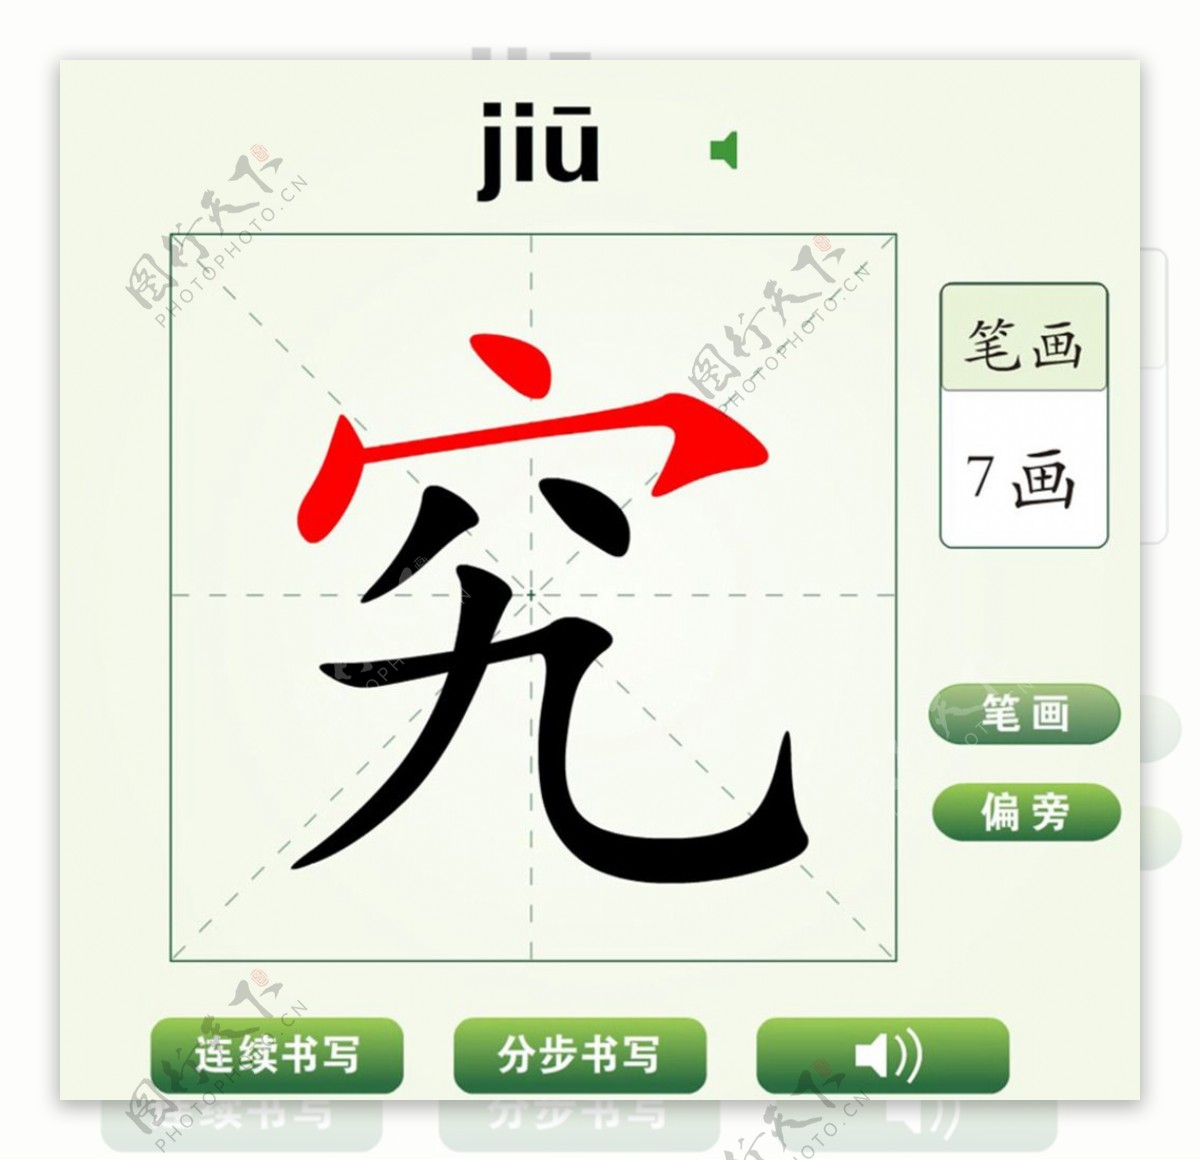 中国汉字究字笔画教学动画视频